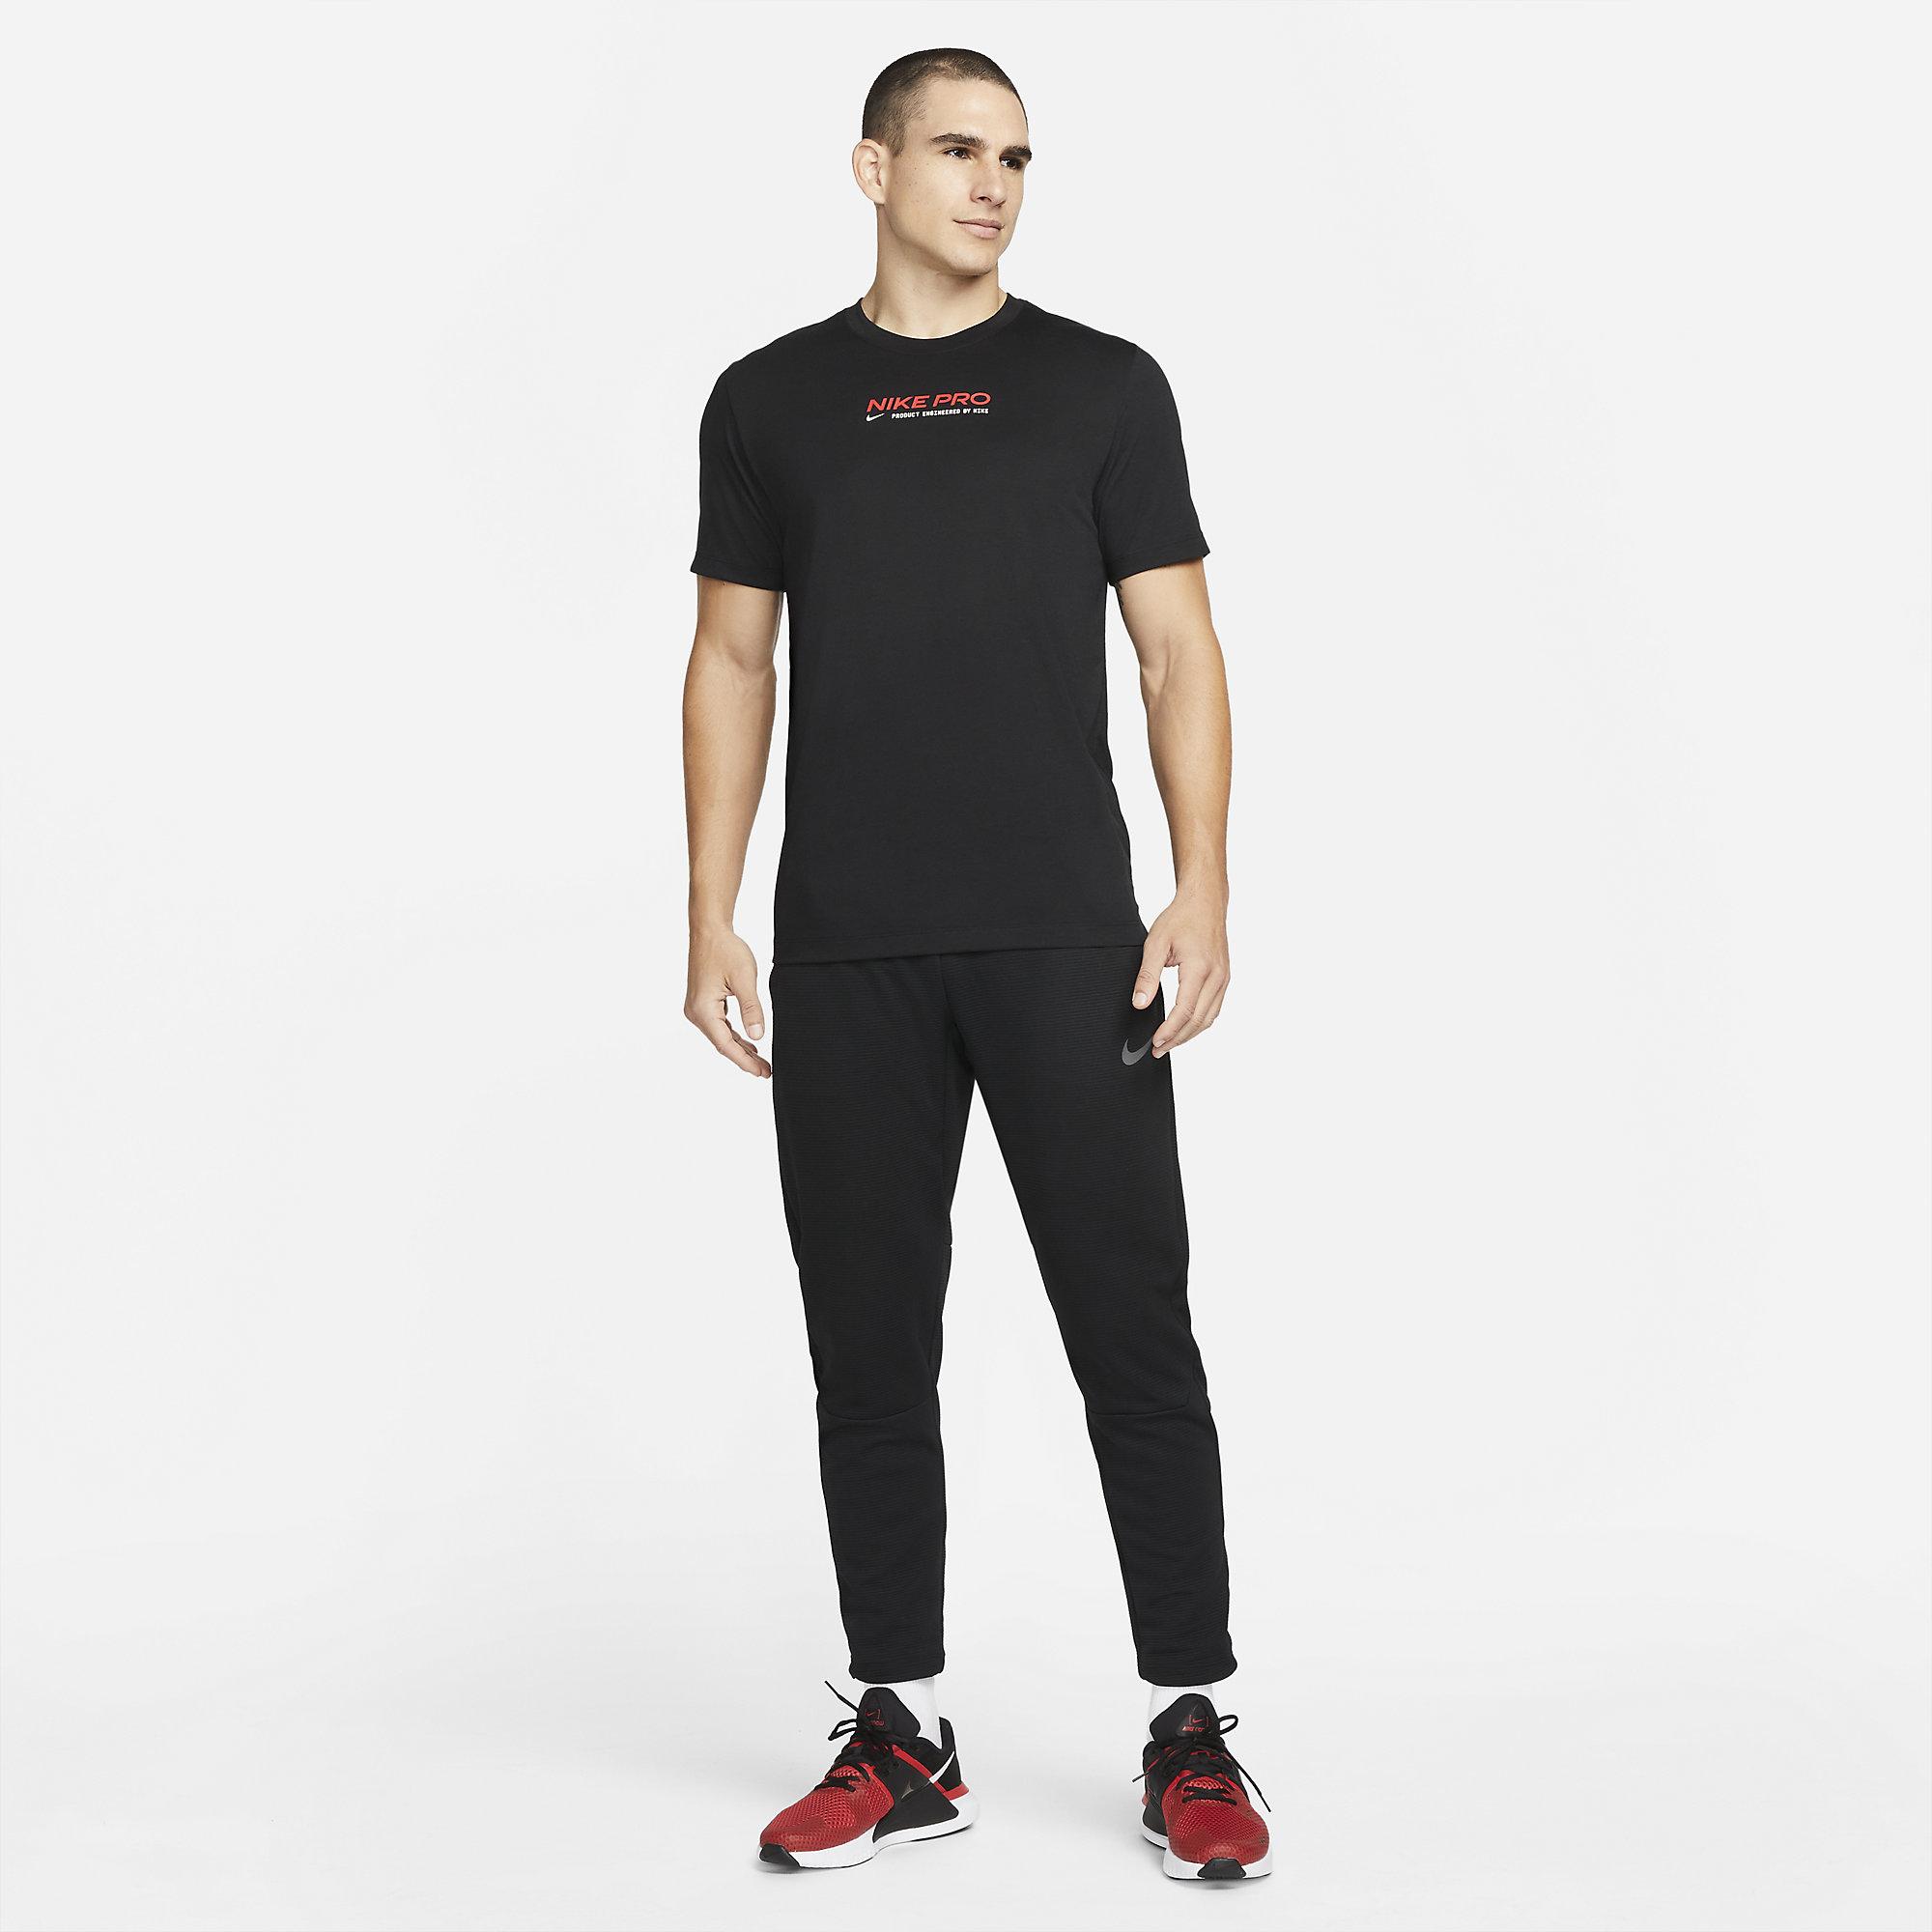 Nike Mens Training T-Shirt - Black - Tennisnuts.com